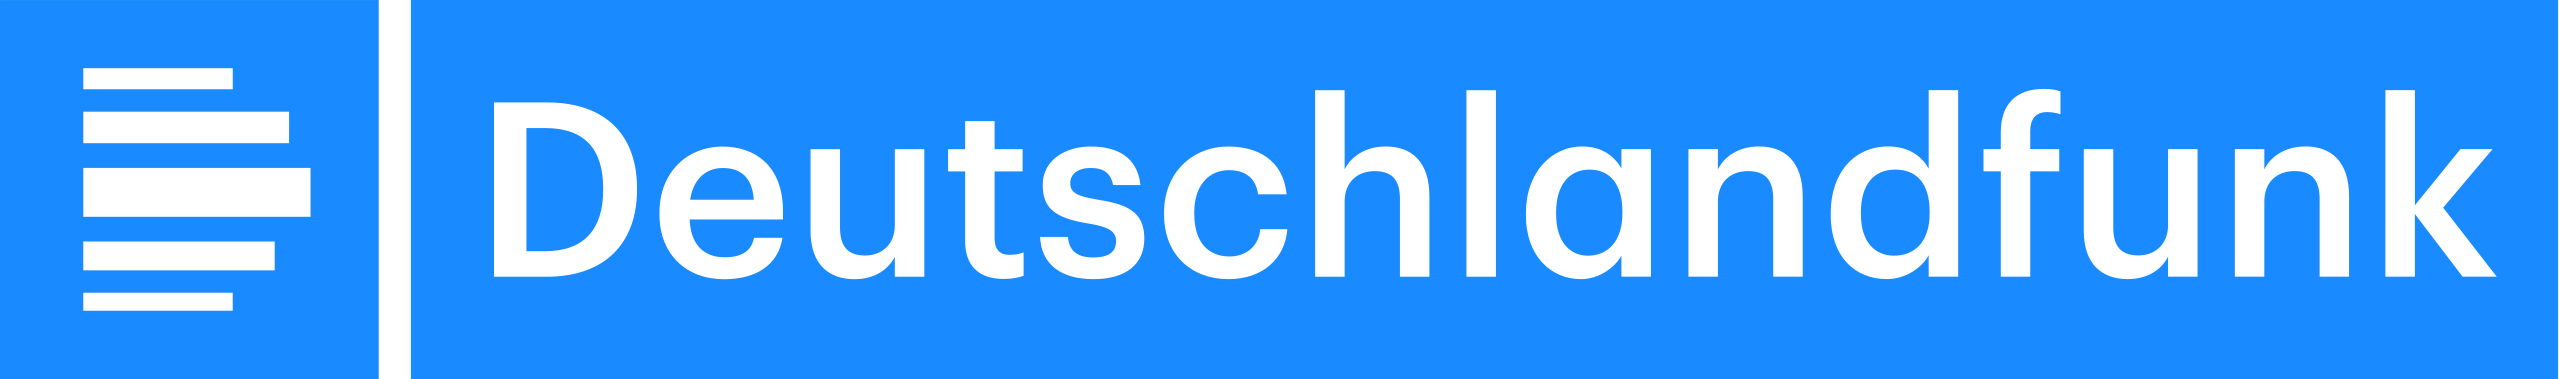 Deutschlandfunk_Logo_2017.svg